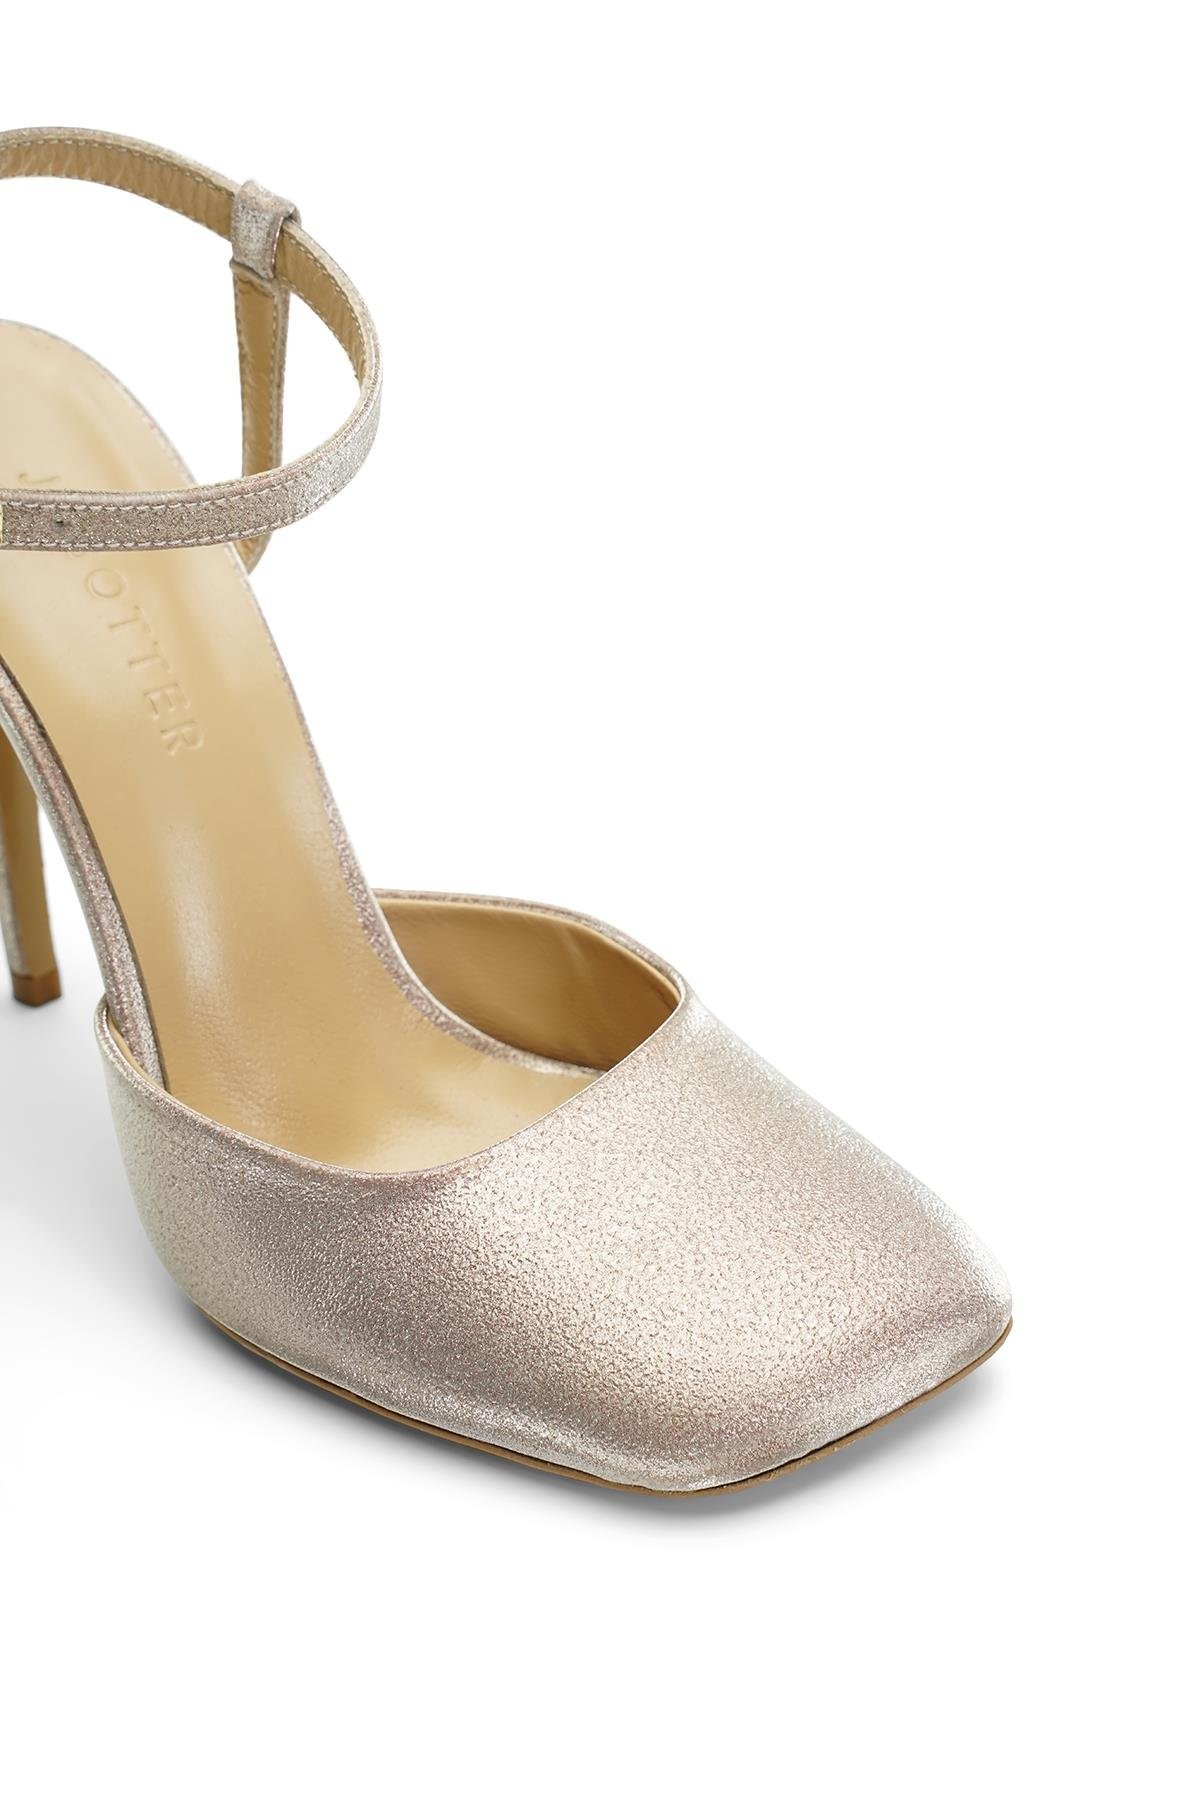 Jabotter Roma Altın Simli 10 Cm Topuklu Ayakkabı